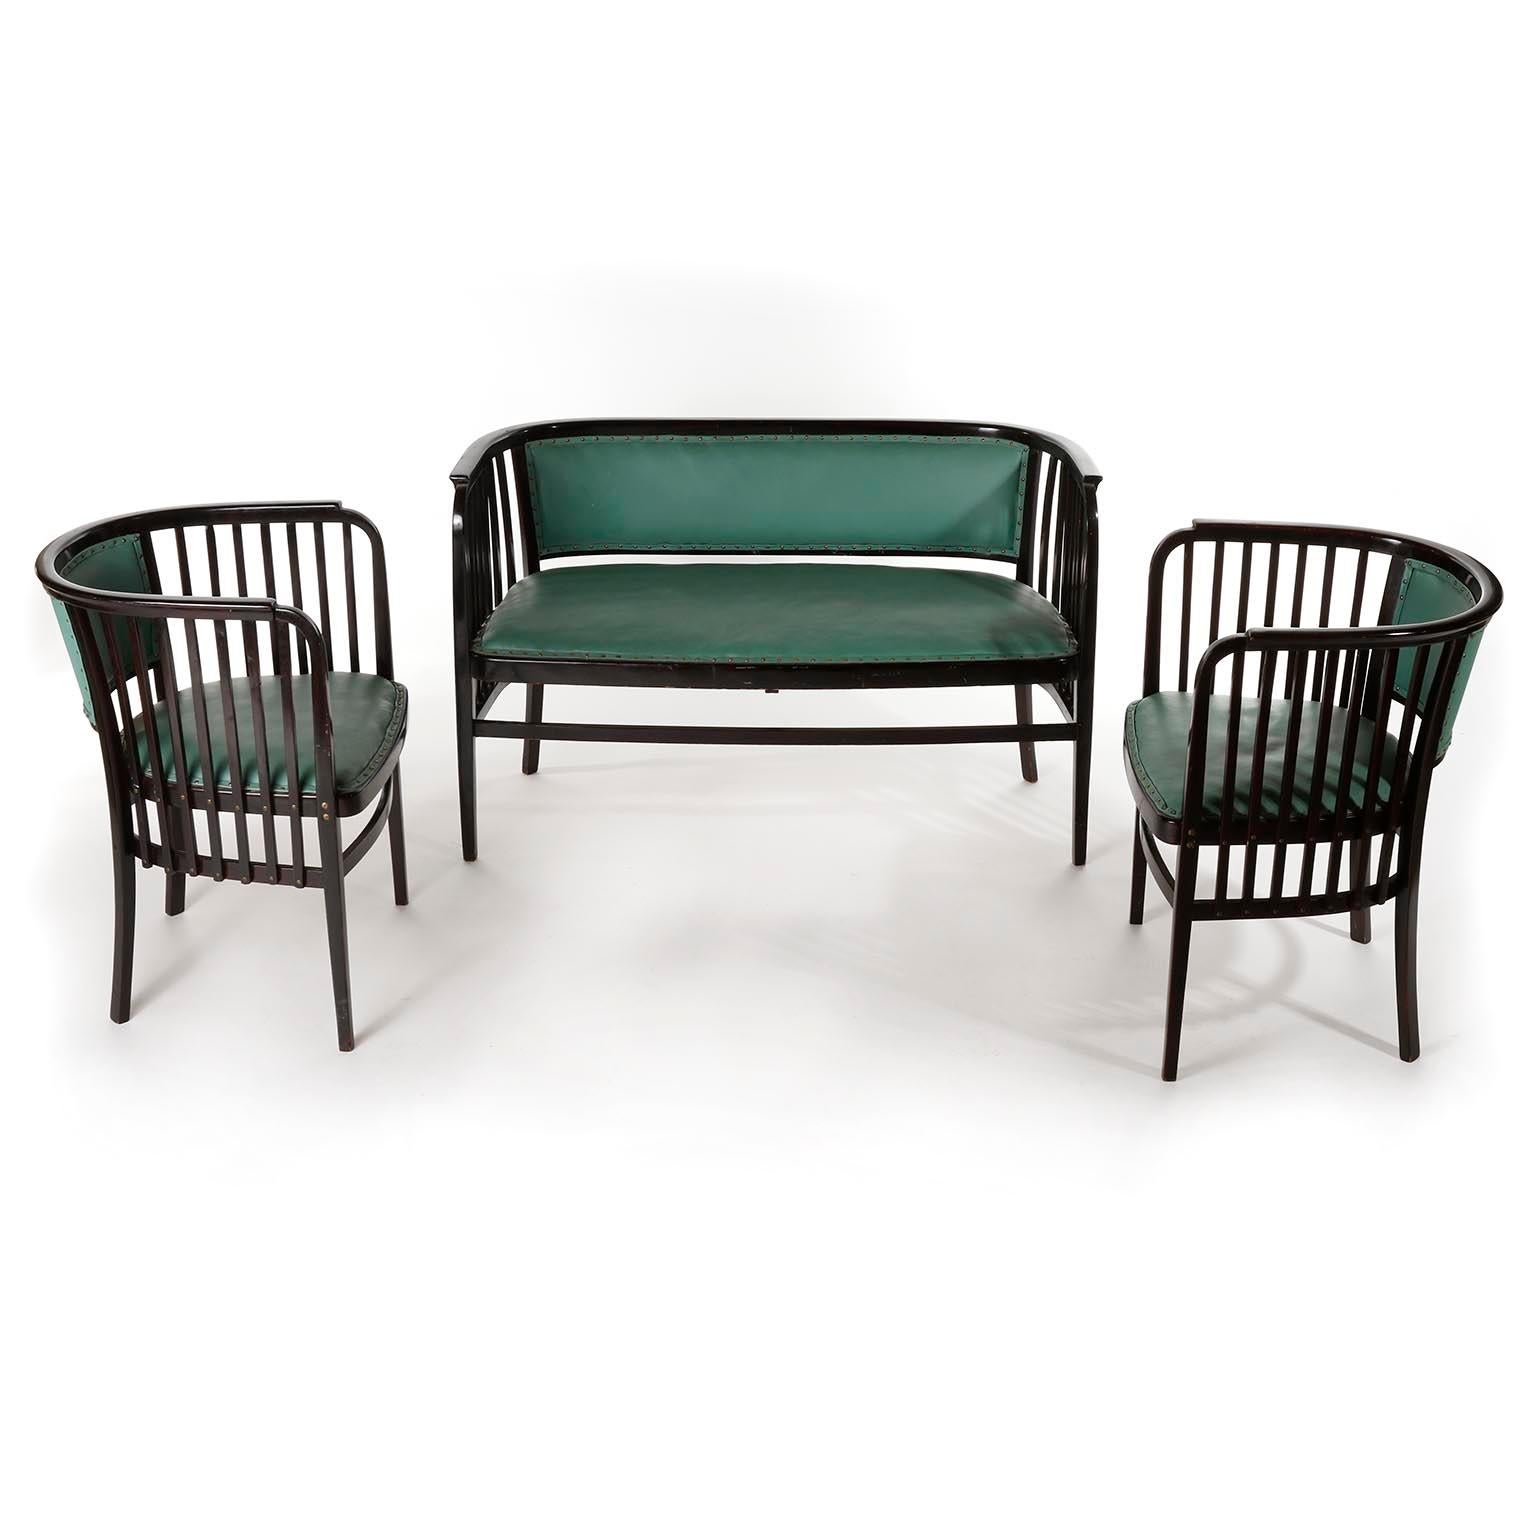 Un fantastique ensemble de sièges en bois courbé conçu par Marcel Kammerer et fabriqué par Thonet, Autriche, vers 1910.
L'ensemble est composé de deux fauteuils et d'un banc ou d'une banquette. Ils sont fabriqués en bois de hêtre teinté foncé ou